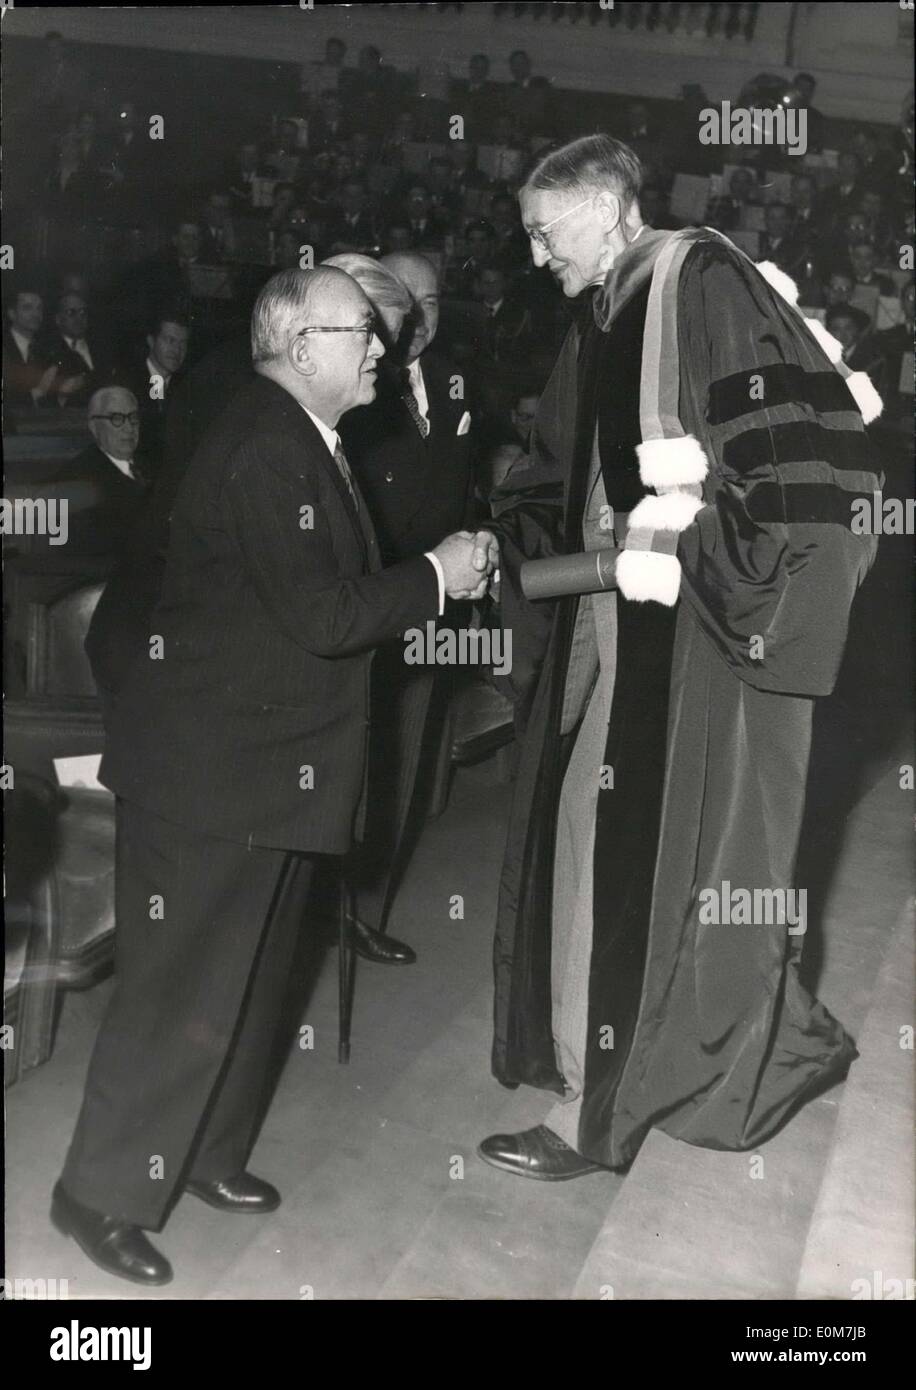 14 novembre 1953 - Paris université a une réouverture session Herbert Spencer Grasser, Prix Nobel, pour la physiologie, directeur honoraire de l'institut Rockefeller, la recherche médicale, N.Y.être félicité par le président Auriol après avoir reçu le diplôme d'honneur Docteur causer. Banque D'Images